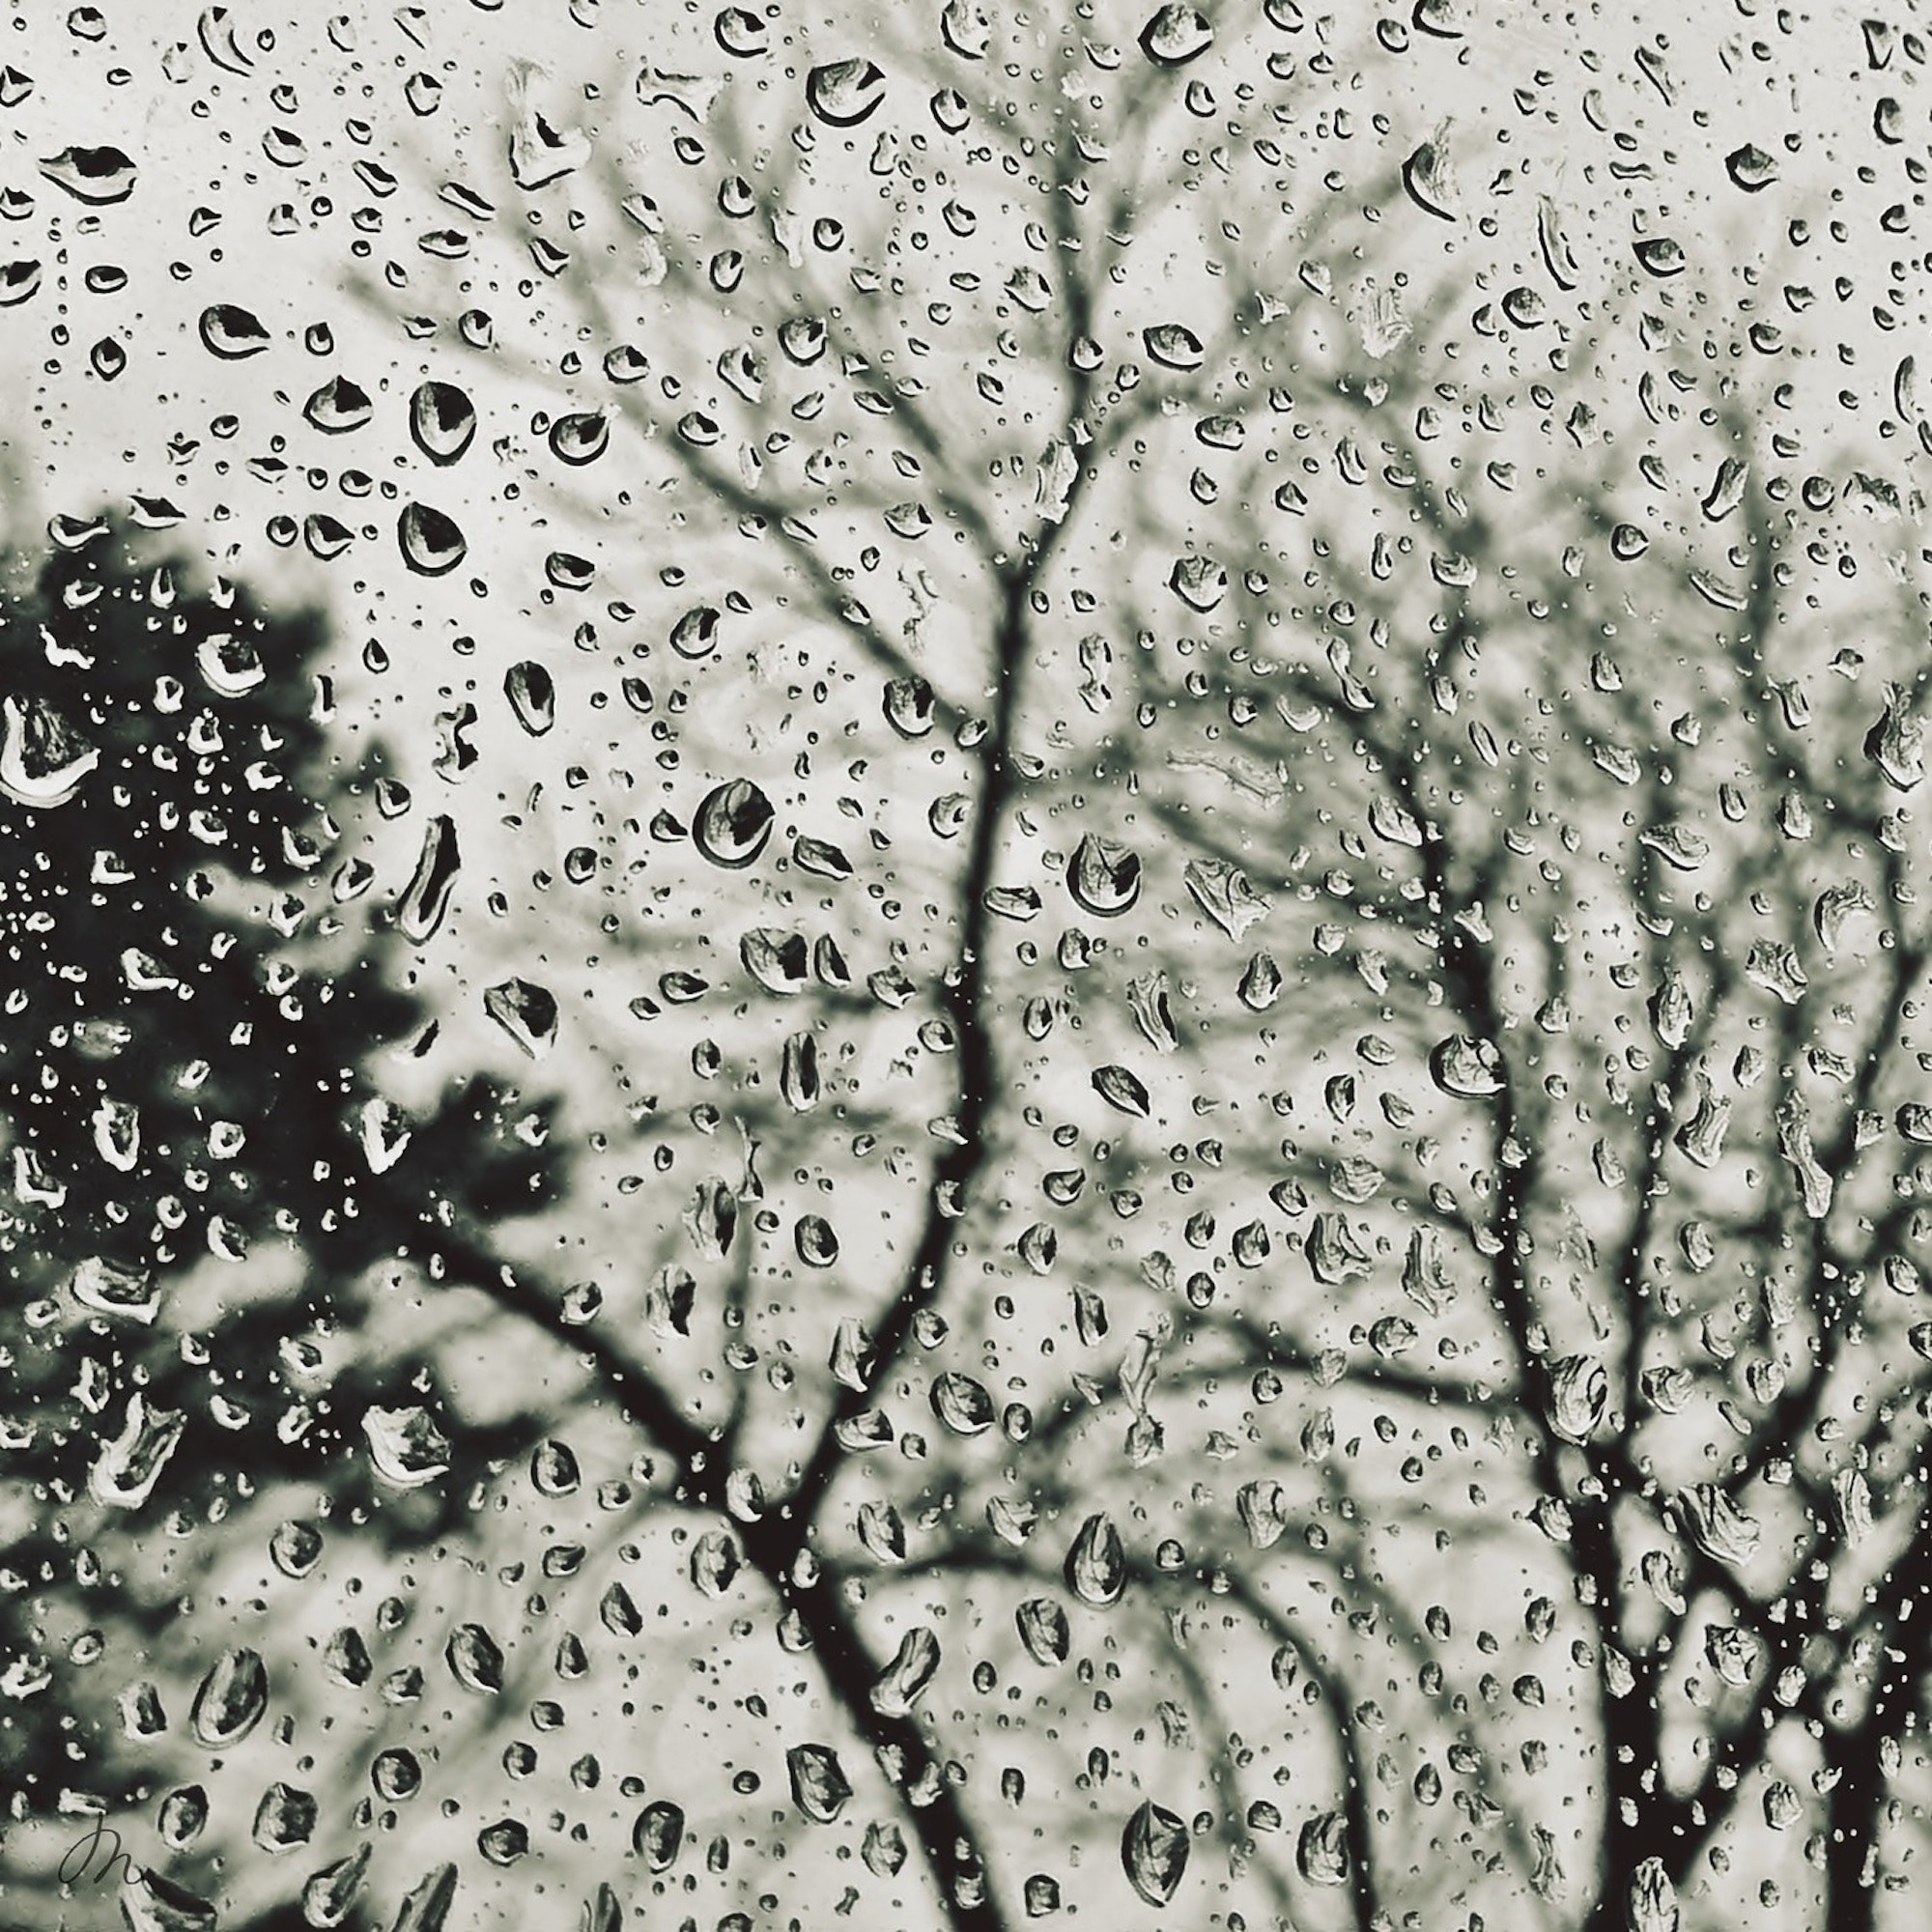 Meditative Rains